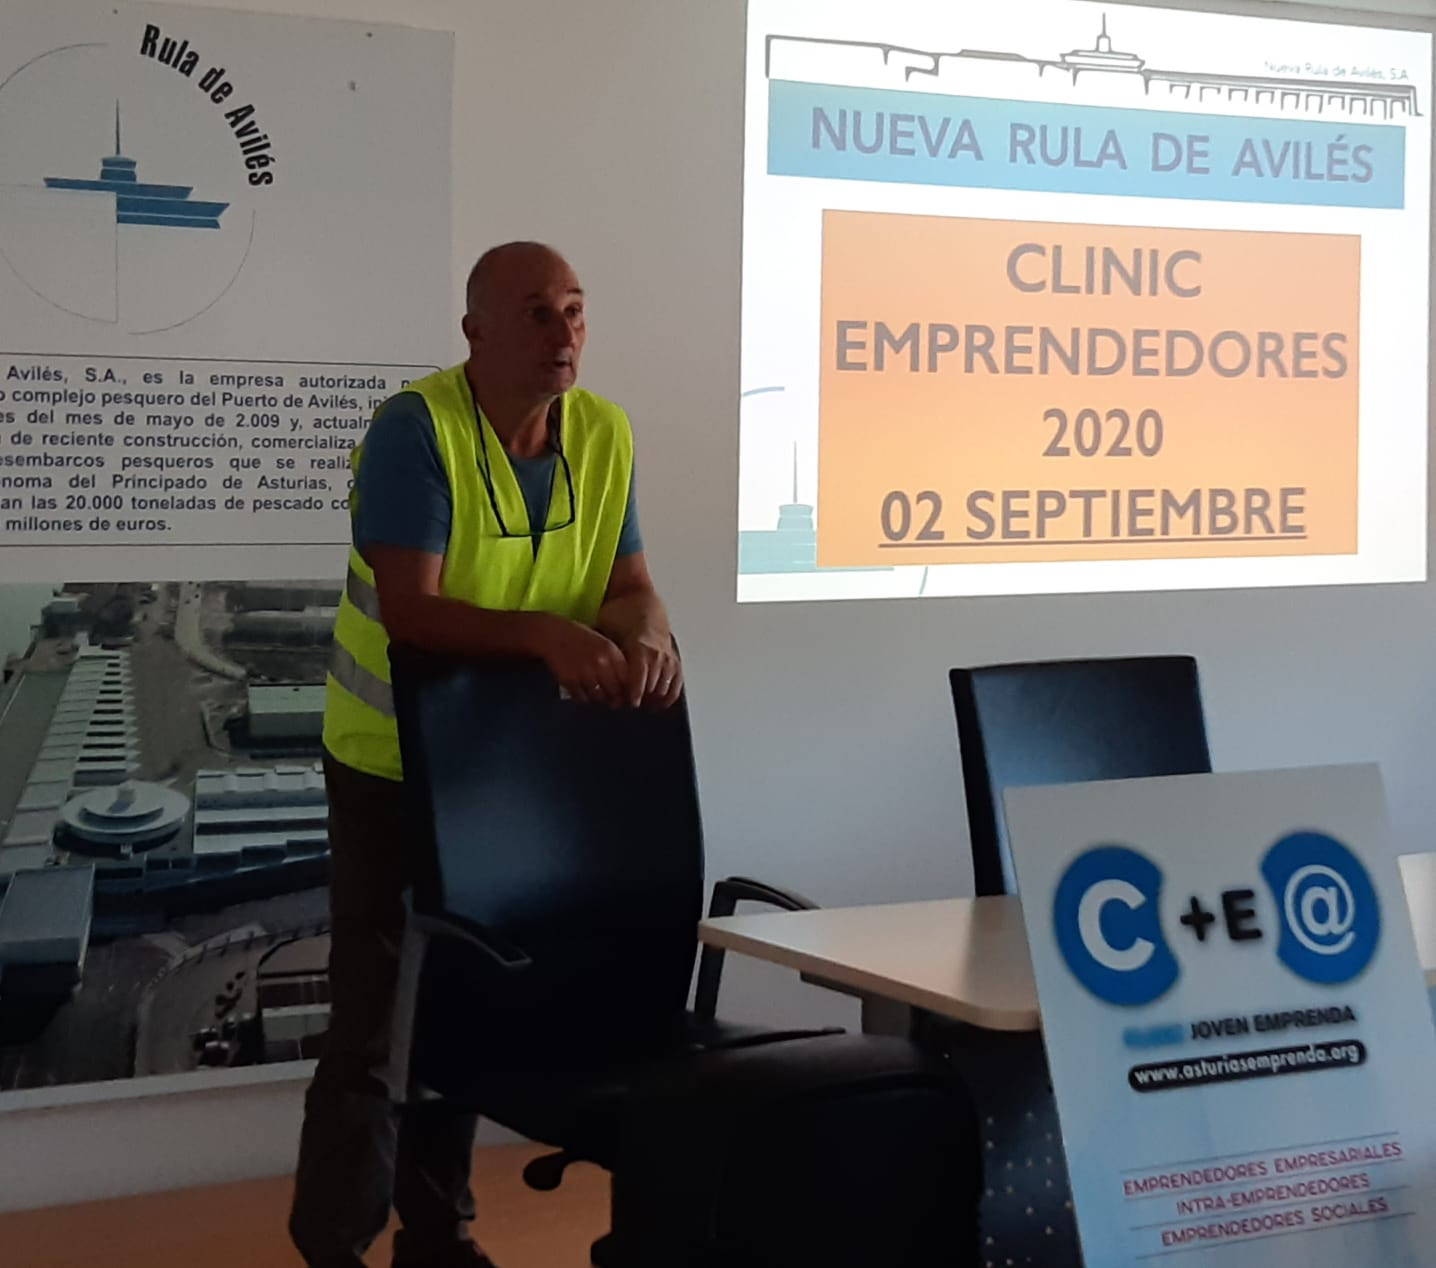 Clinic Joven emprenda Visita Rula Avilés